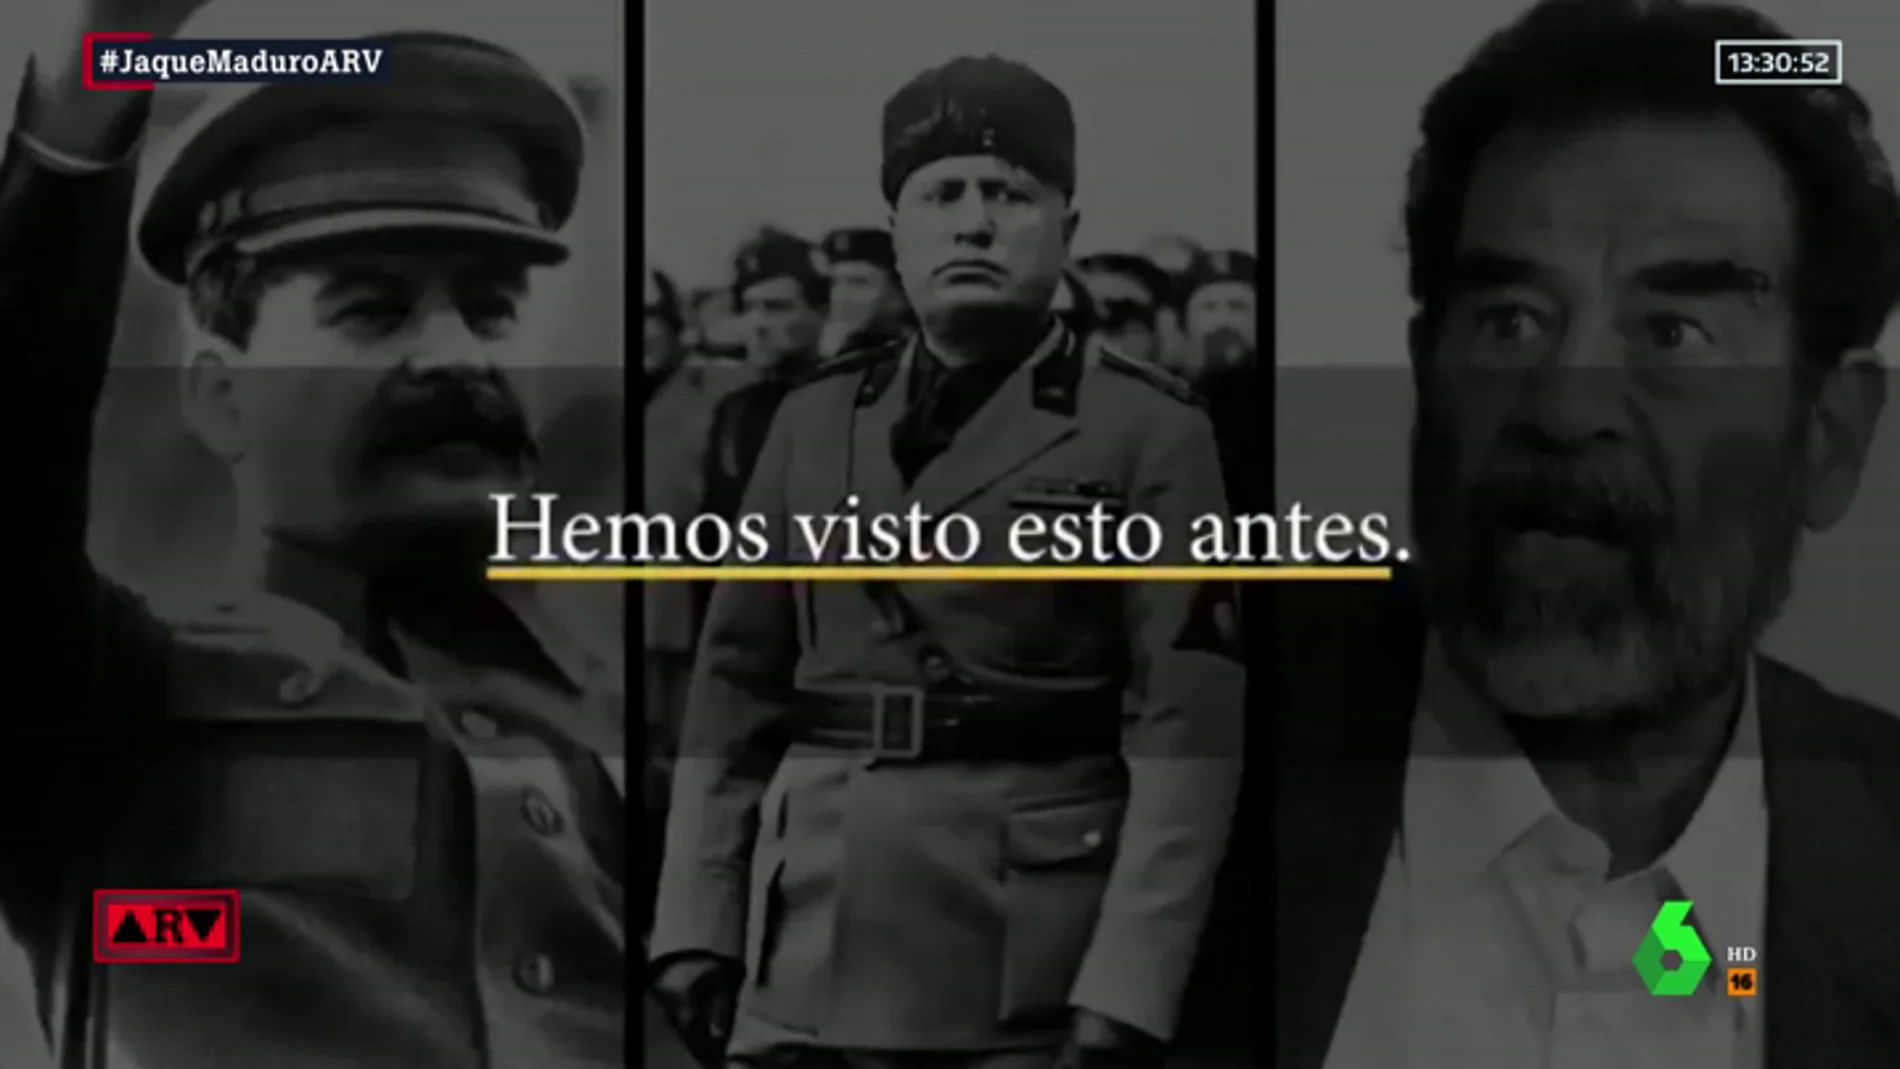 La Casa Blanca compara en un vídeo a Maduro con Stalin, Mussolini o Gadafi: "Hemos visto esto antes"